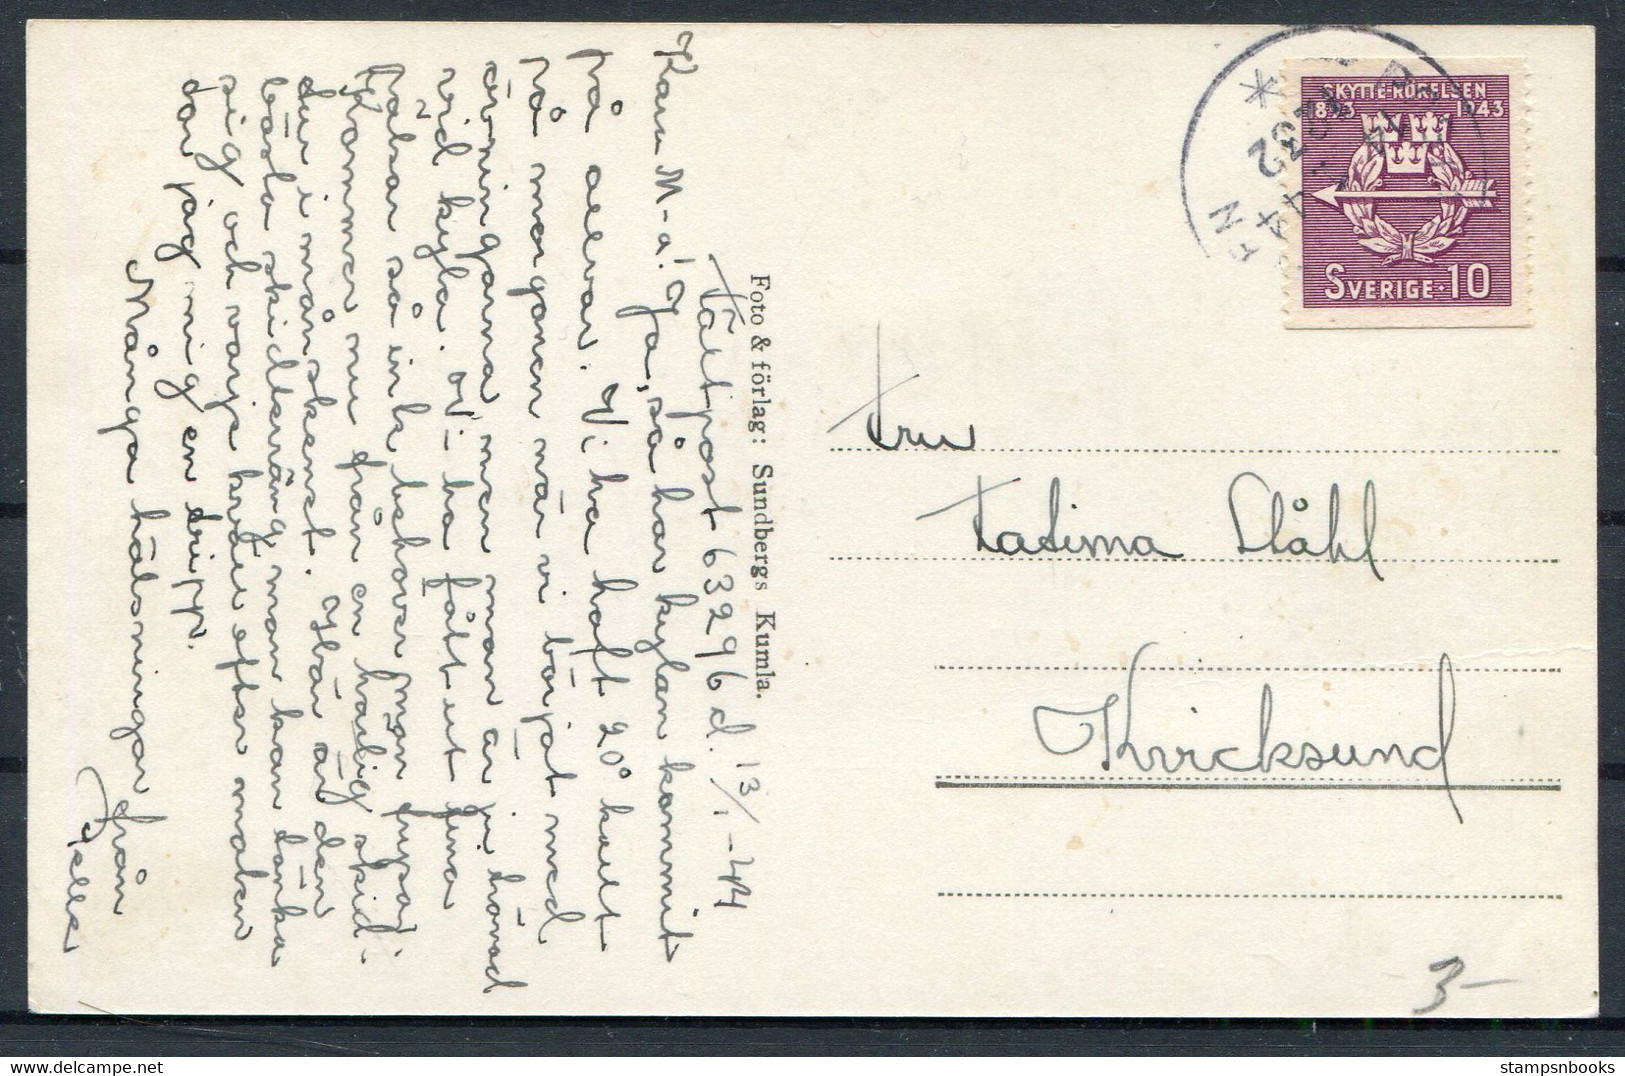 1944 Sweden Karlsson Willie Bergstrom Postcard, Postanstalen 1232 - Militares